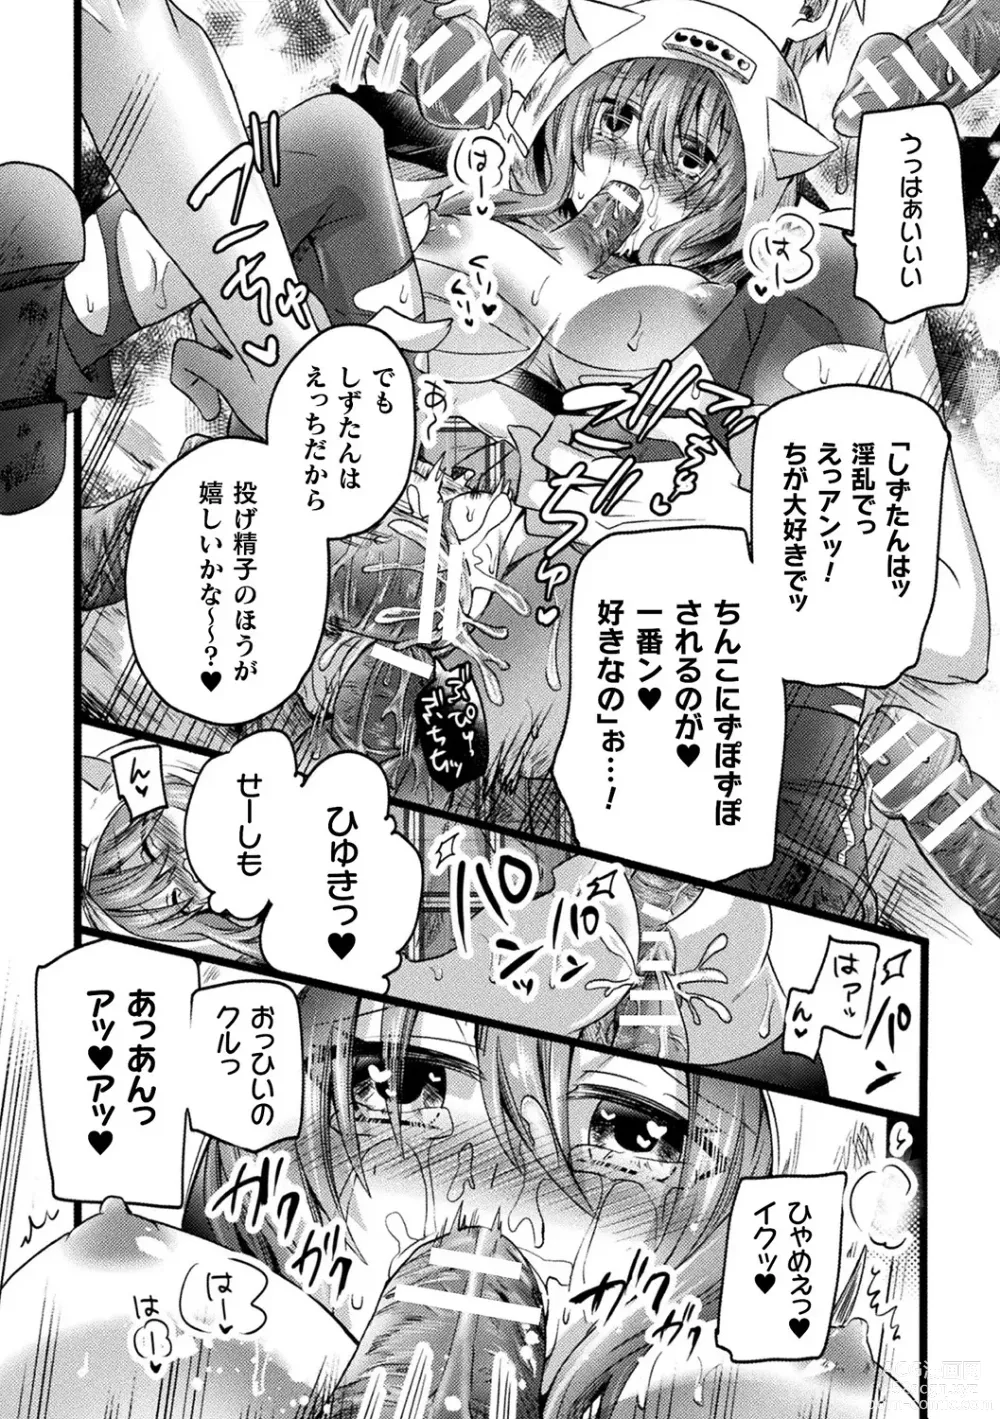 Page 84 of manga Bessatsu Comic Unreal AI ni Wakaraserareru Jinrui Hen Vol. 2